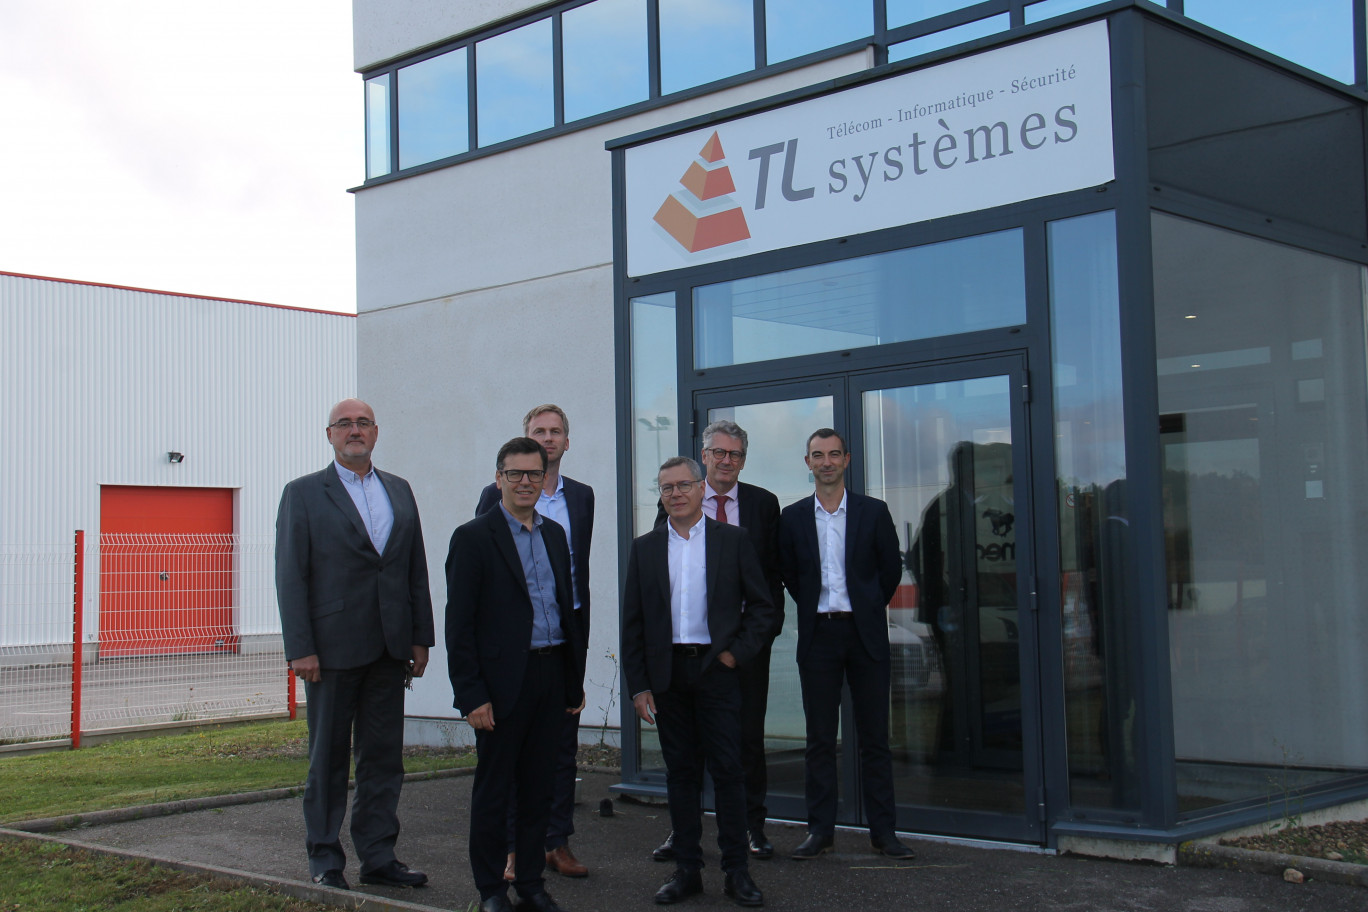 Le passage de relais se veut progressif entre l’ancienne équipe de direction et la nouvelle depuis le rachat de TL Systèmes par le groupe belge Trustteam.